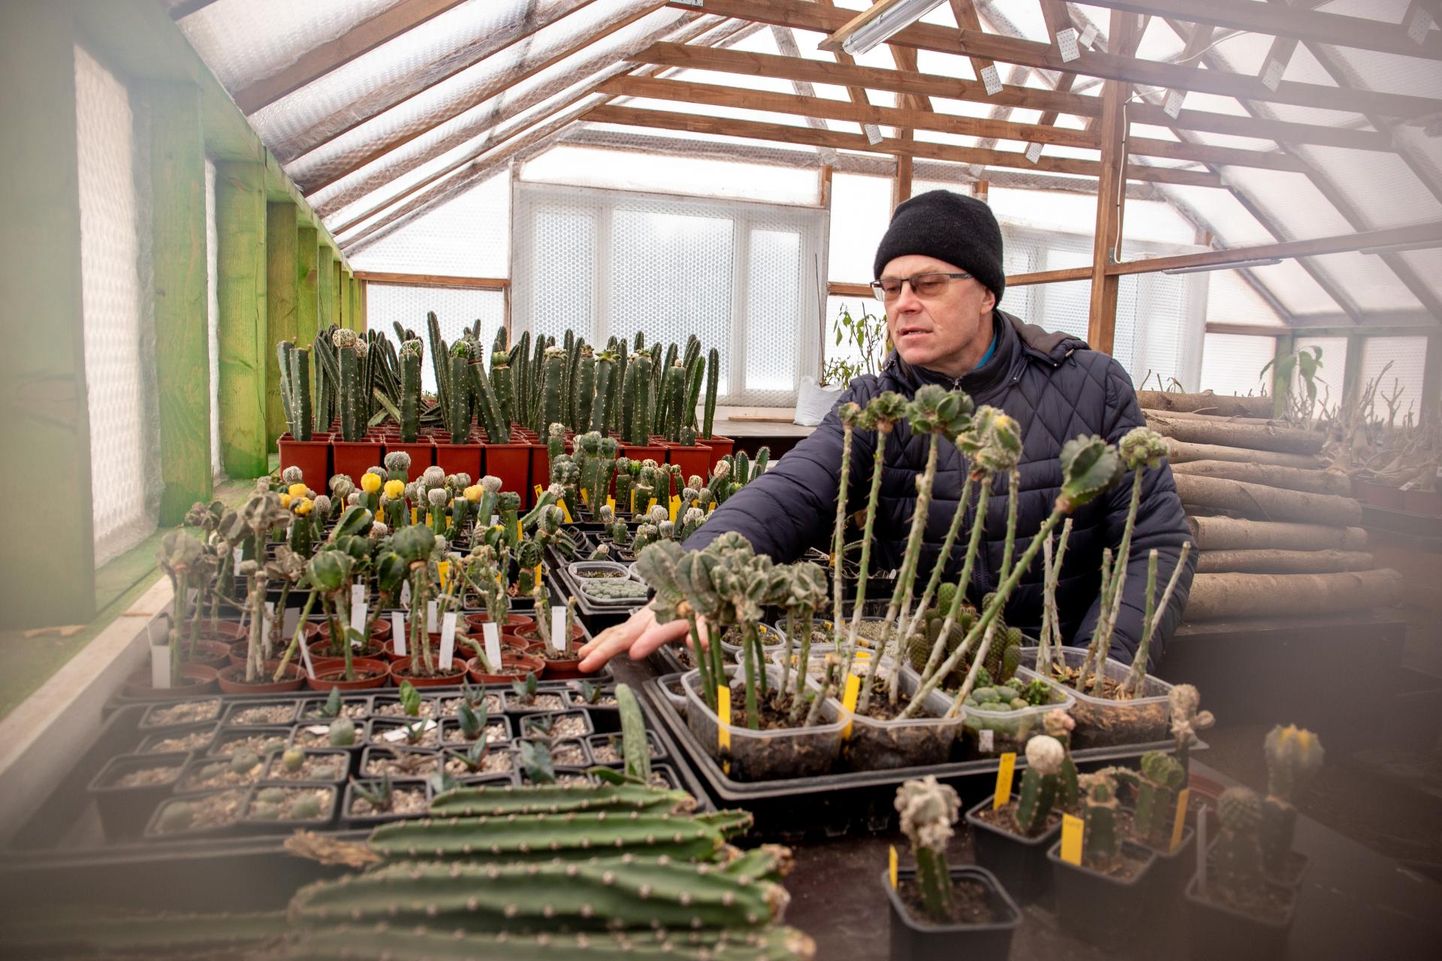 “Mul jäid alles tähtkaktuse külvid, mida tahtsin pookima hakata,” näitab Harri Poom uues kaktusemajas ­taastatava kollektsiooni ­alget.